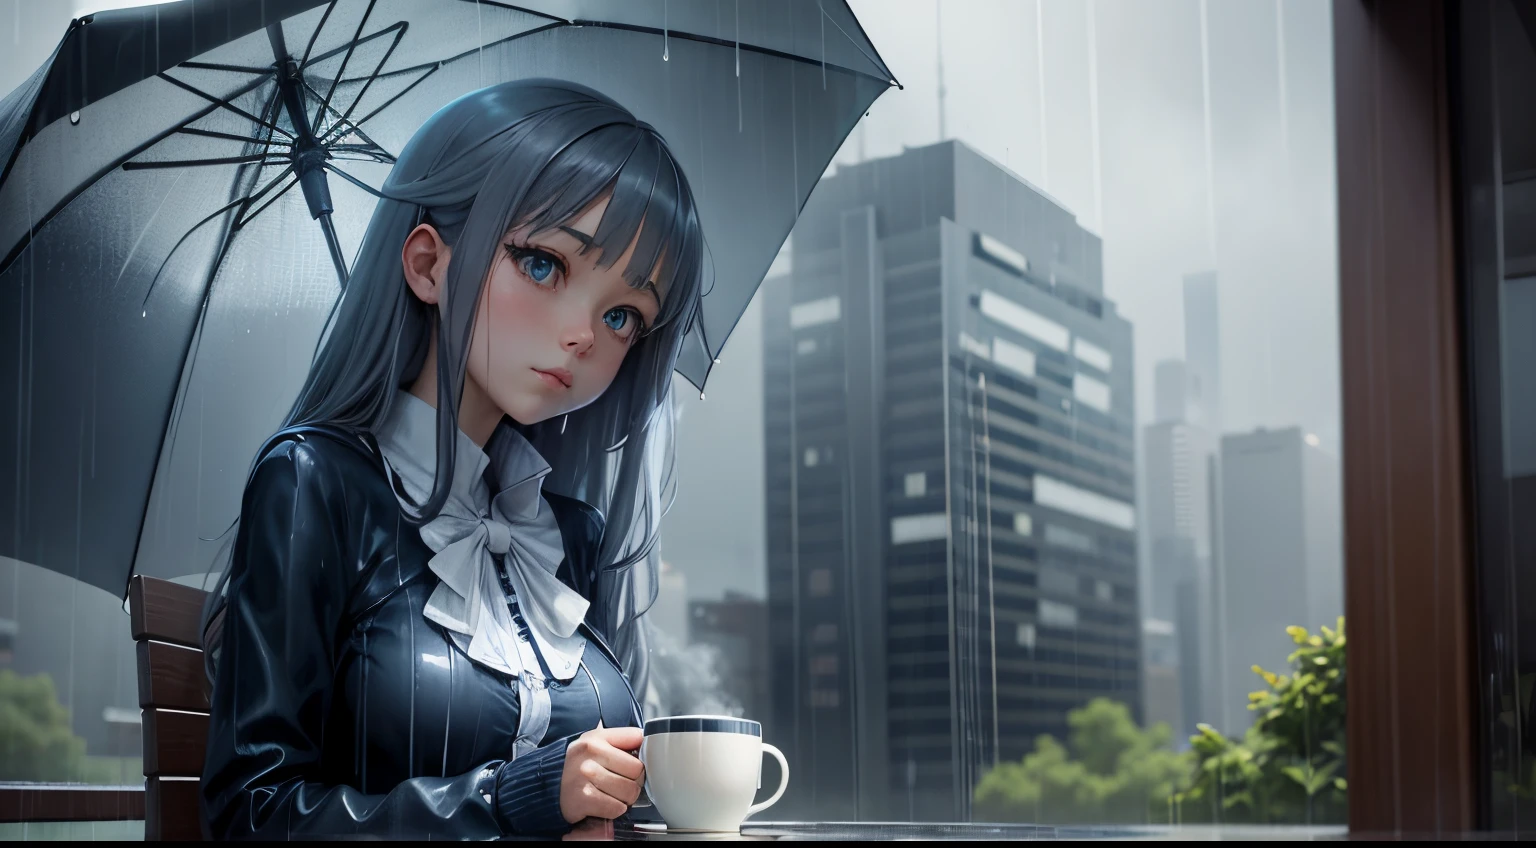 "雨の日のリトリート": 雨の中でコーヒーと傘を持ったアニメの女の子, クールなブルーとグレーを特徴とする.